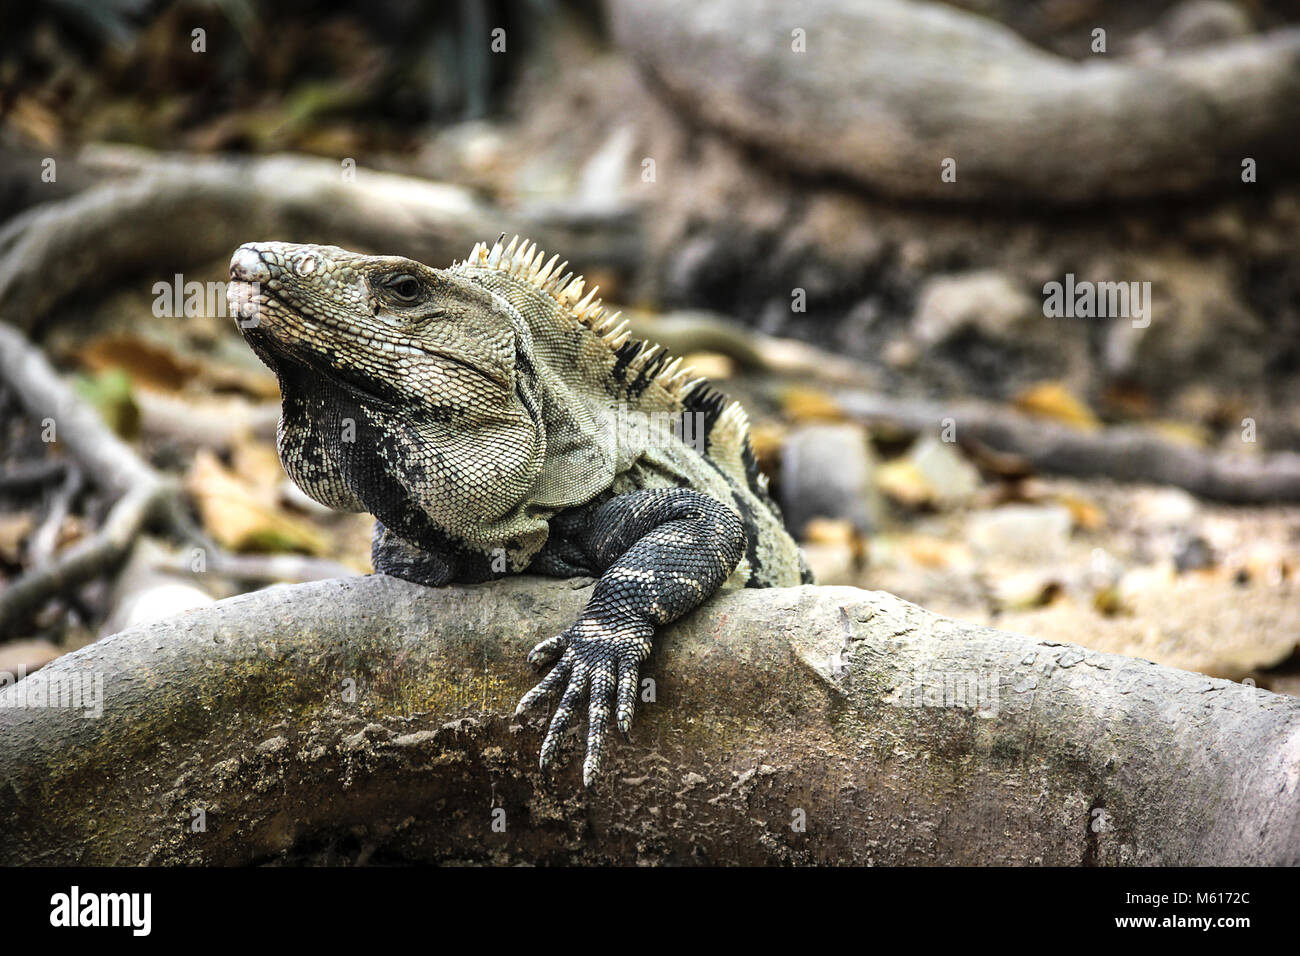 Big lizard con picchi mohicano sul ramo Foto Stock